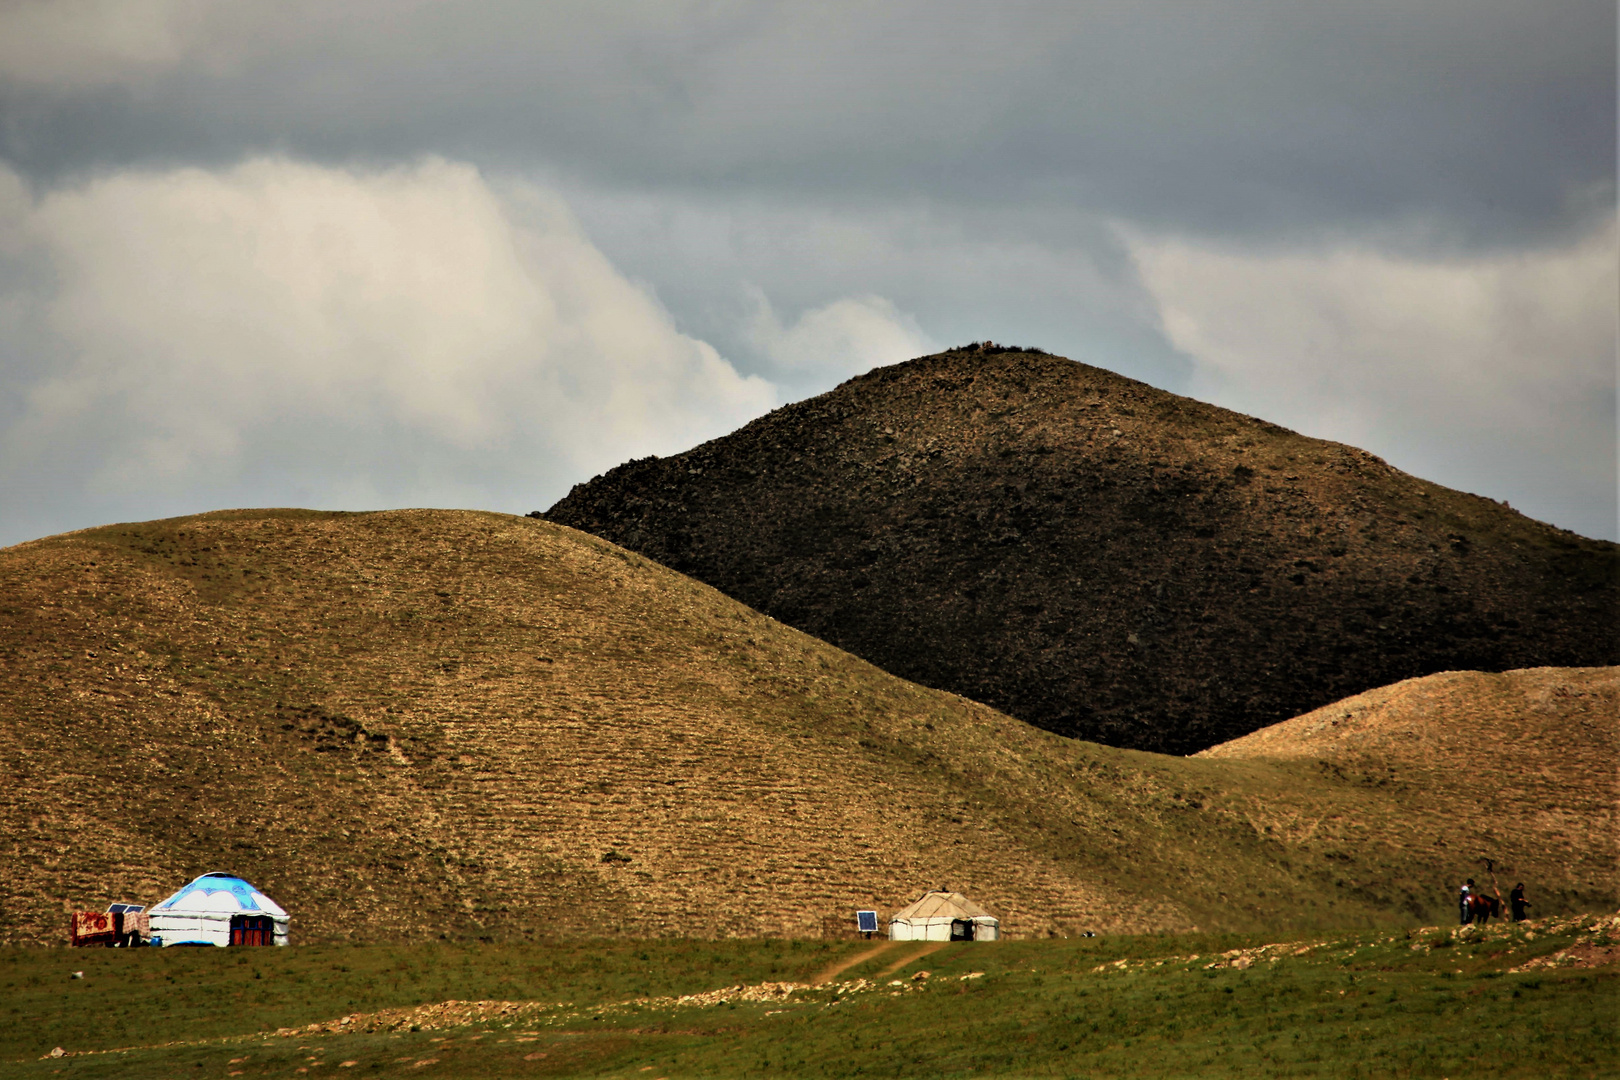 Inner Mongolia landscape